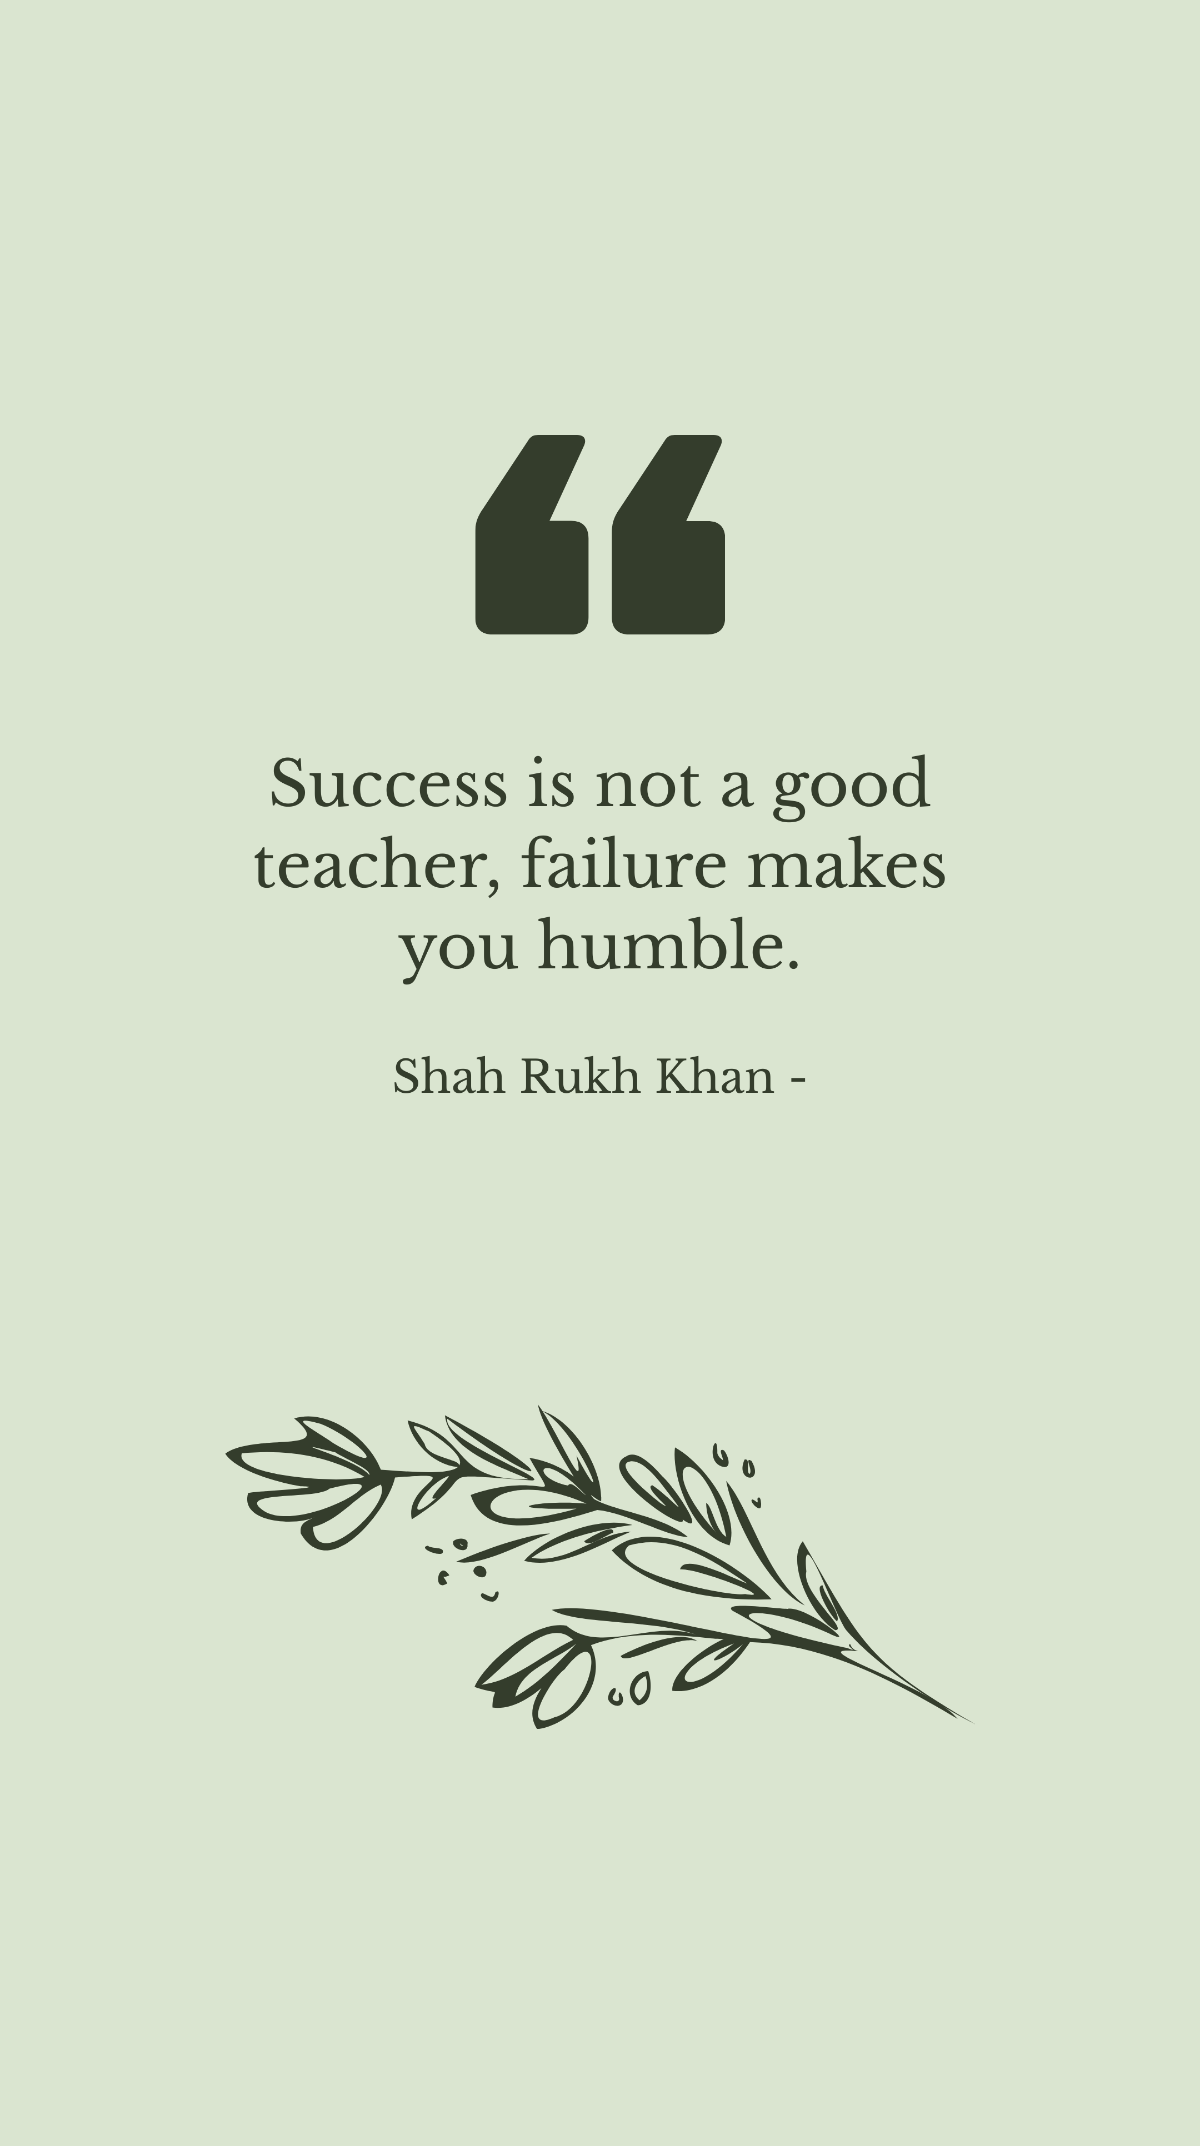 Shah Rukh Khan - Success is not a good teacher, failure makes you humble.